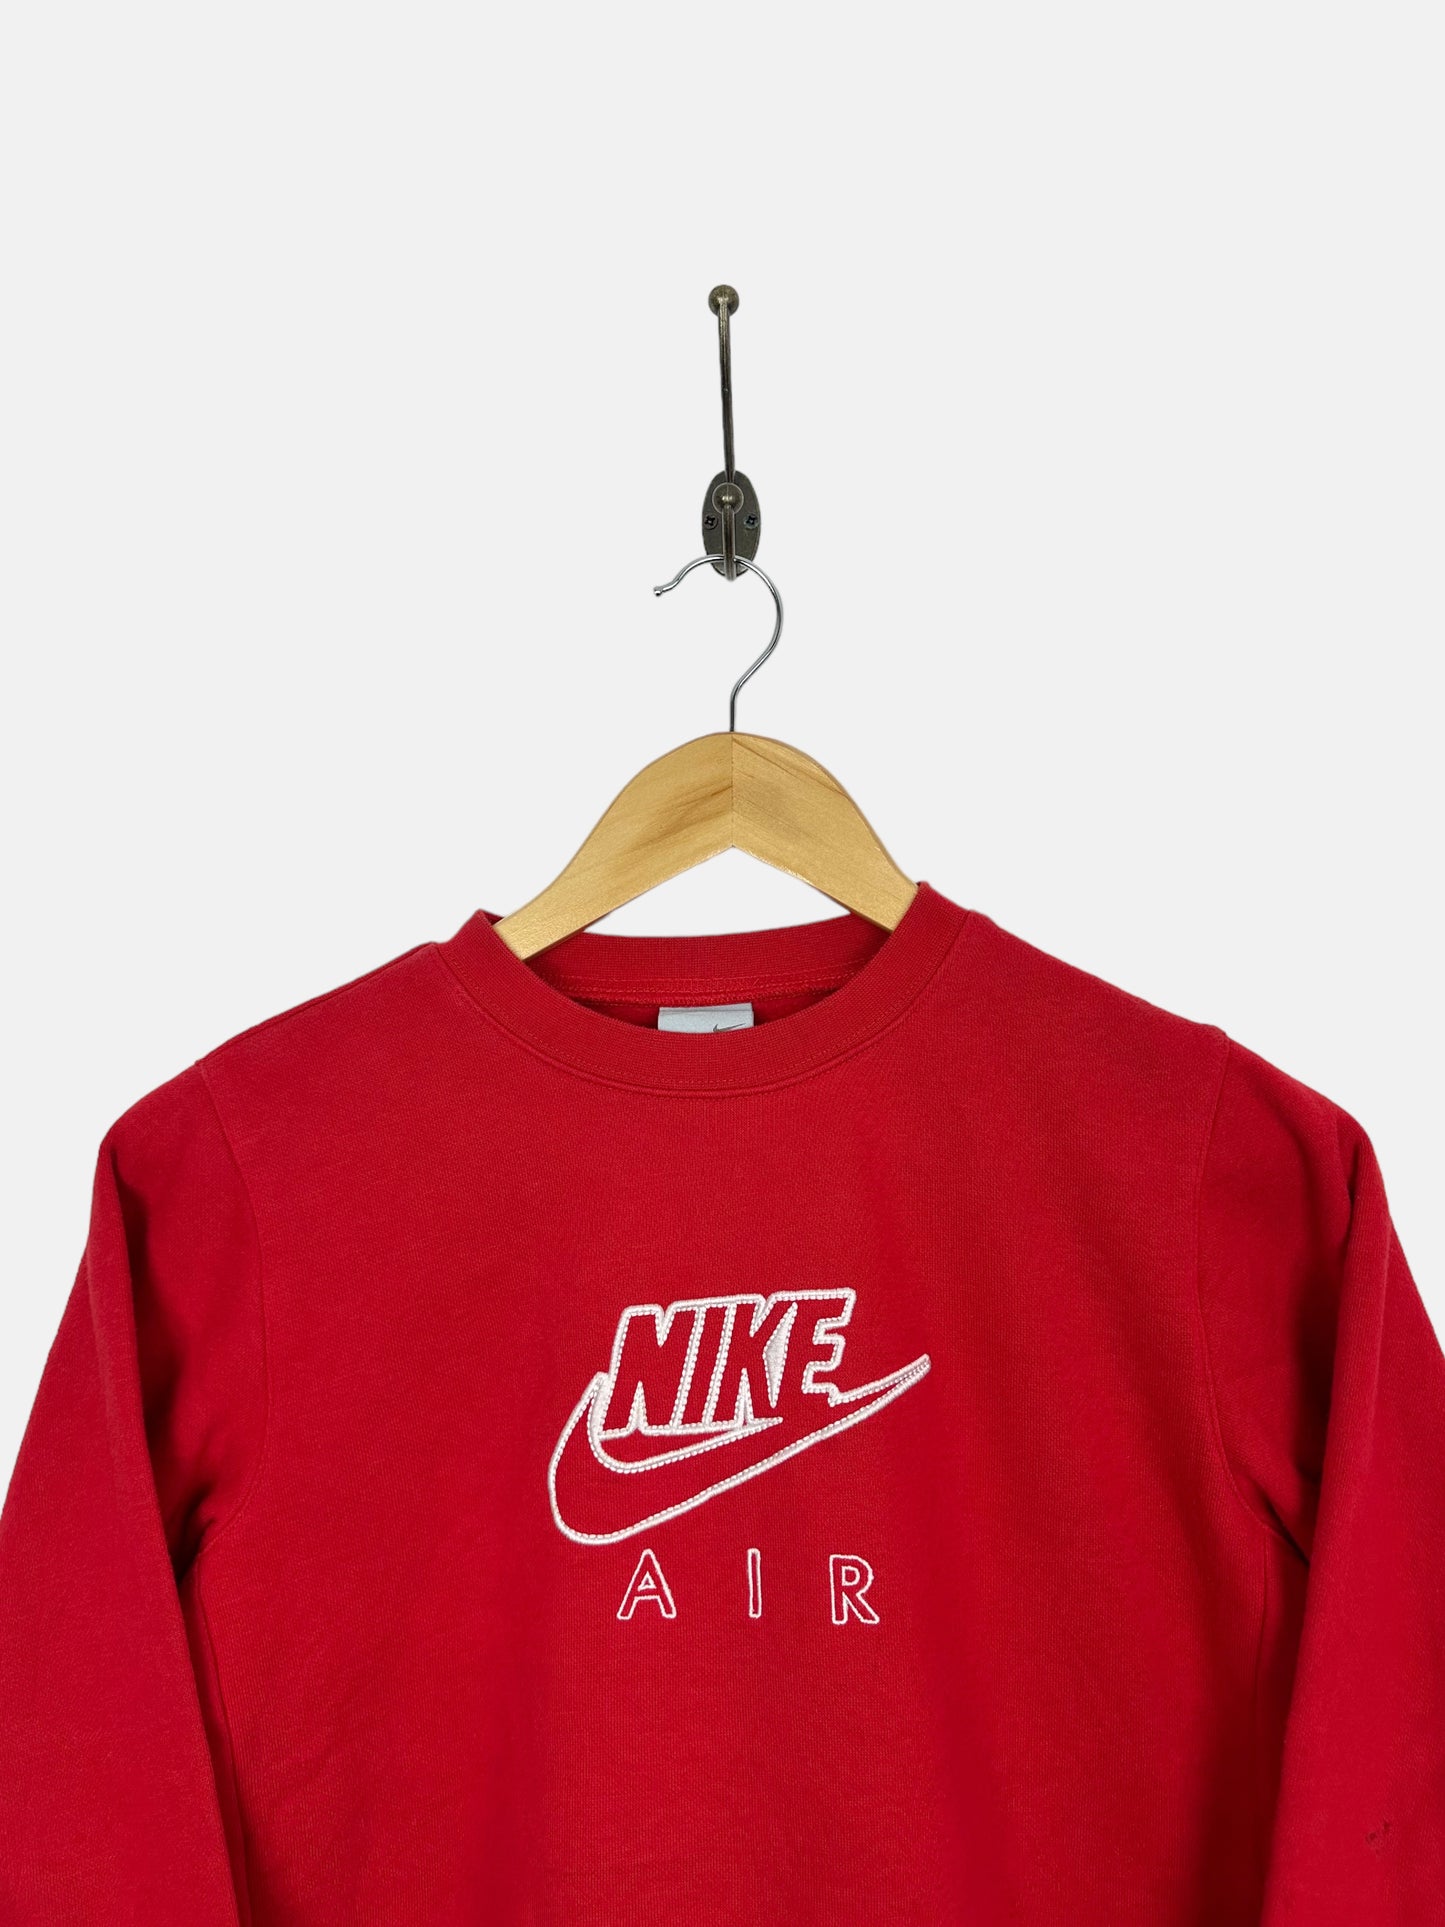 Youth Nike Air Vintage Sweatshirt